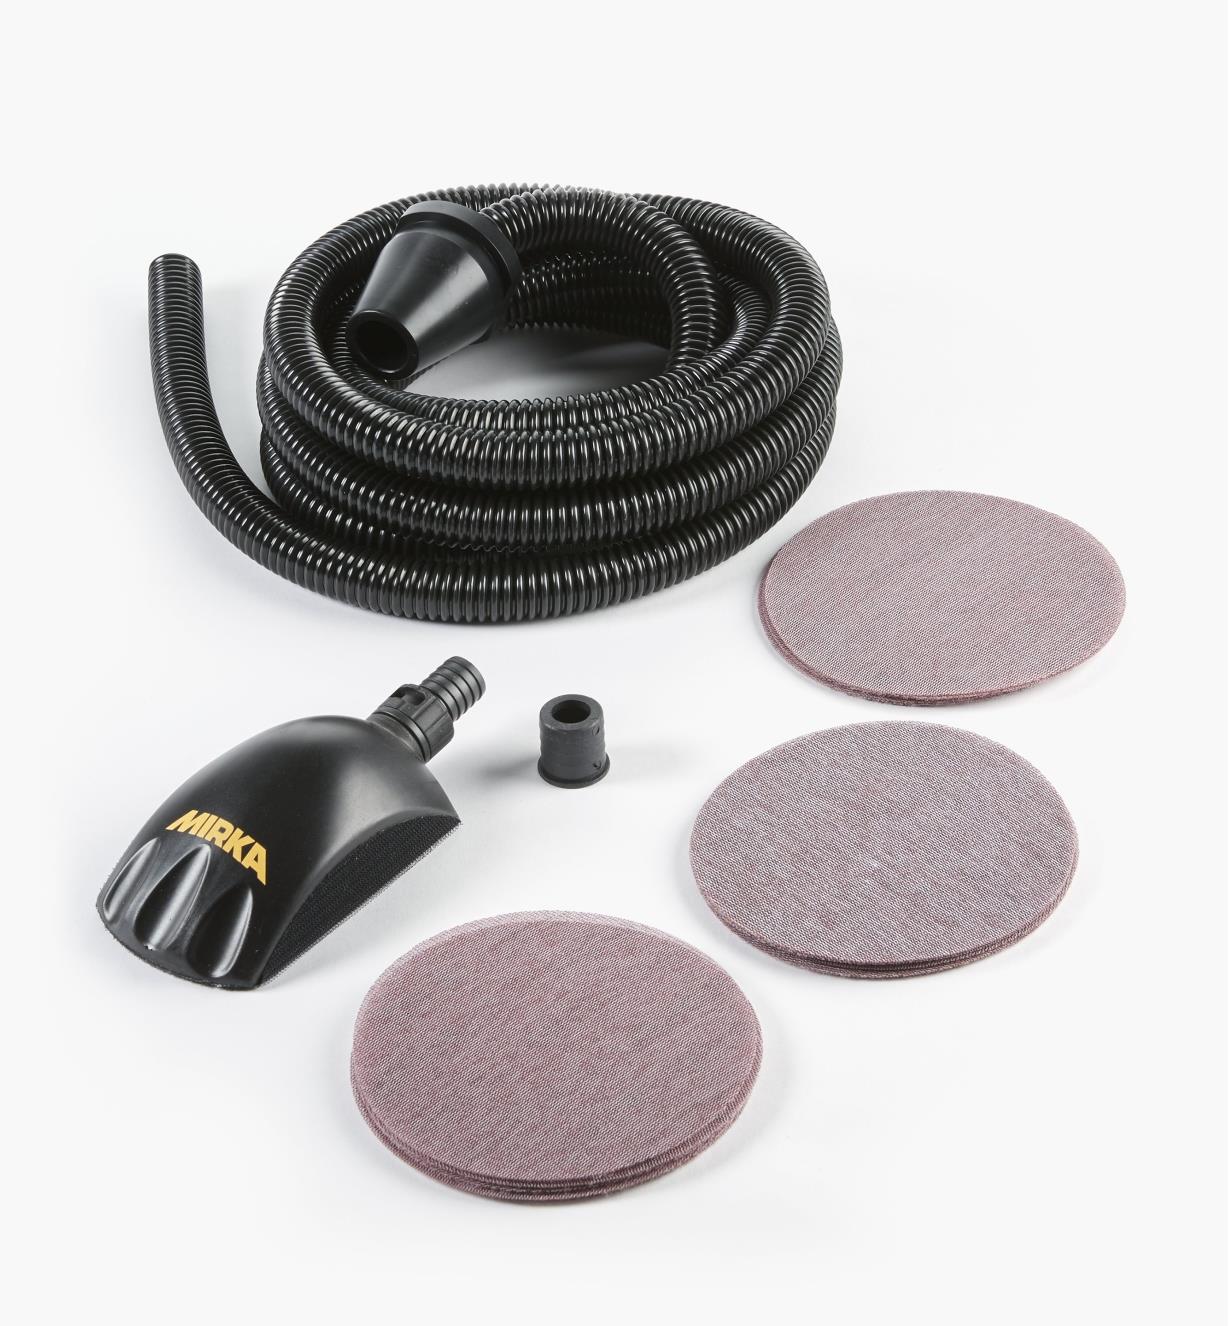 08K3190 - Roundy Dust-Free Hand-Sanding Kit